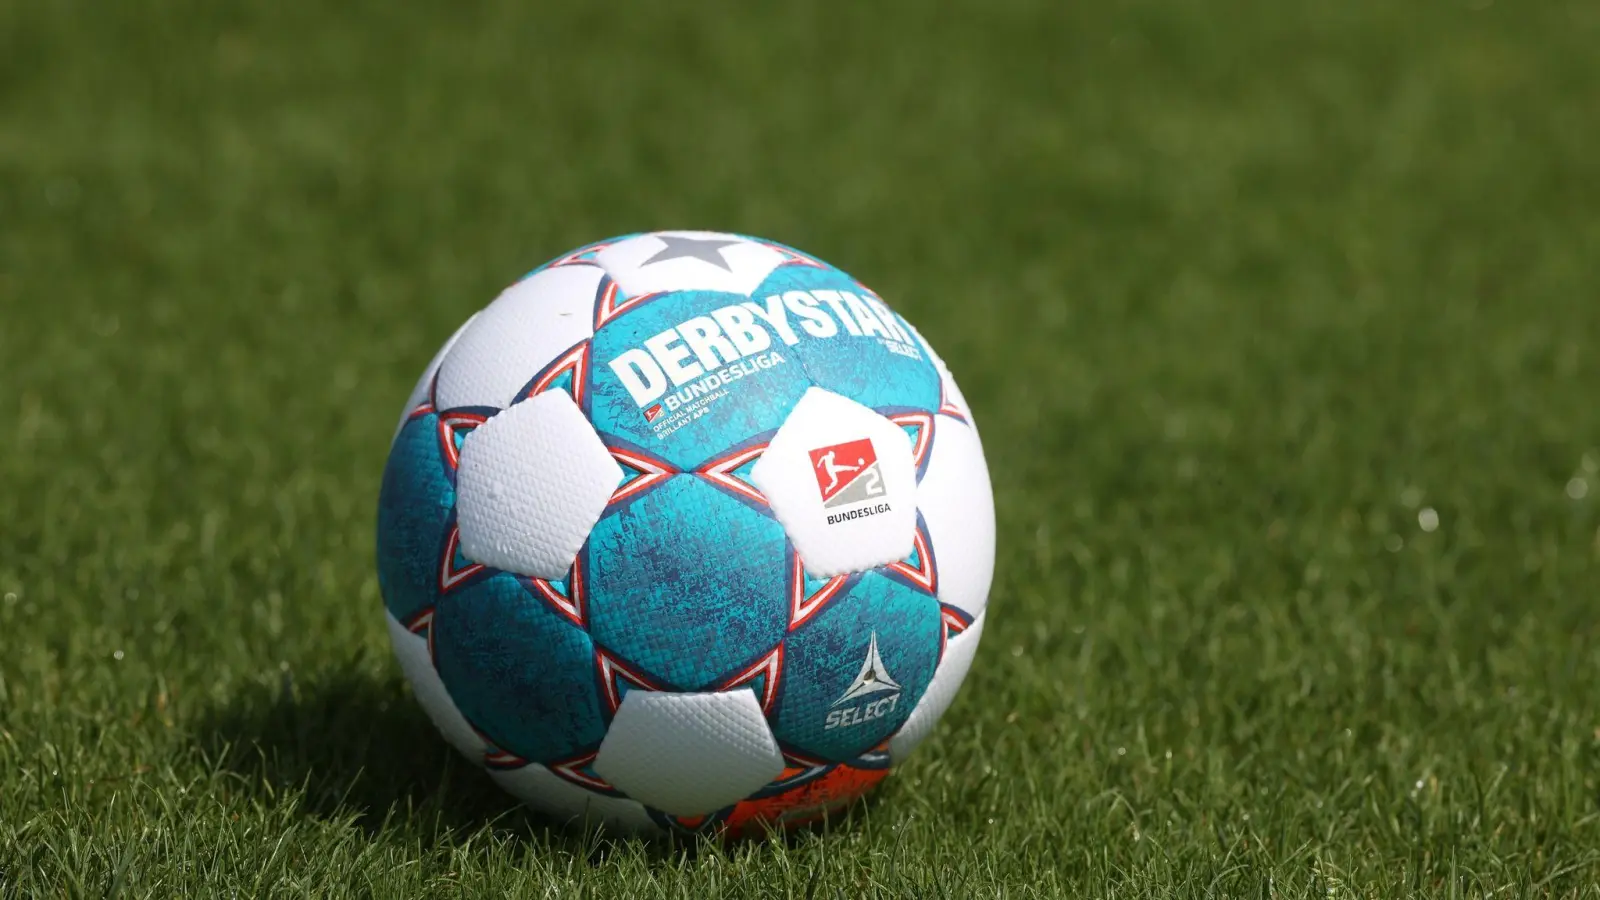 Ein Spielball der 2. Bundesliga liegt auf dem rasen. (Foto: Guido Kirchner/dpa/Symbolbild)